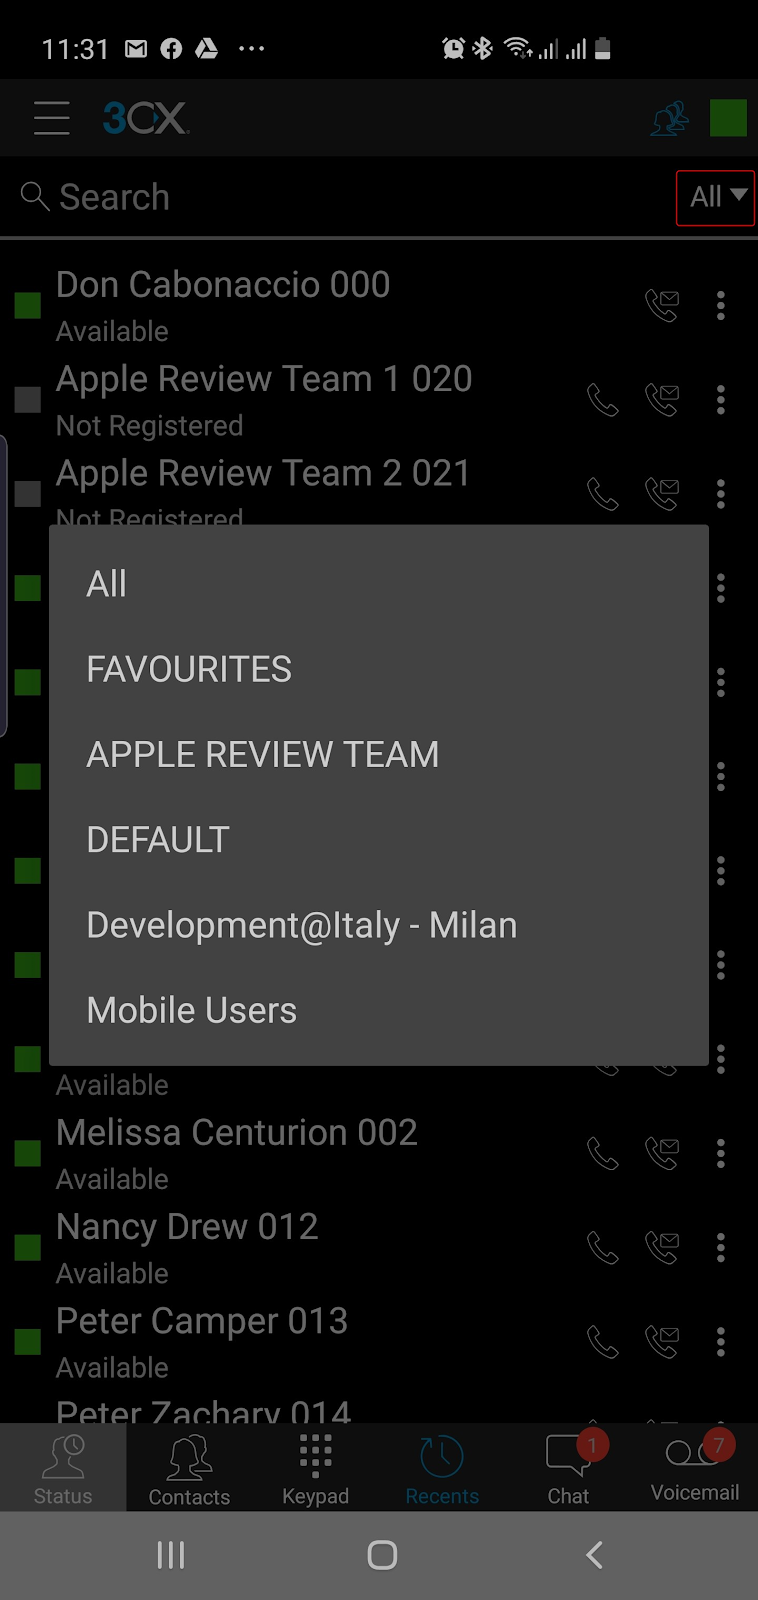 Новое приложение 3CX для Android Beta - Удобное отображение групп